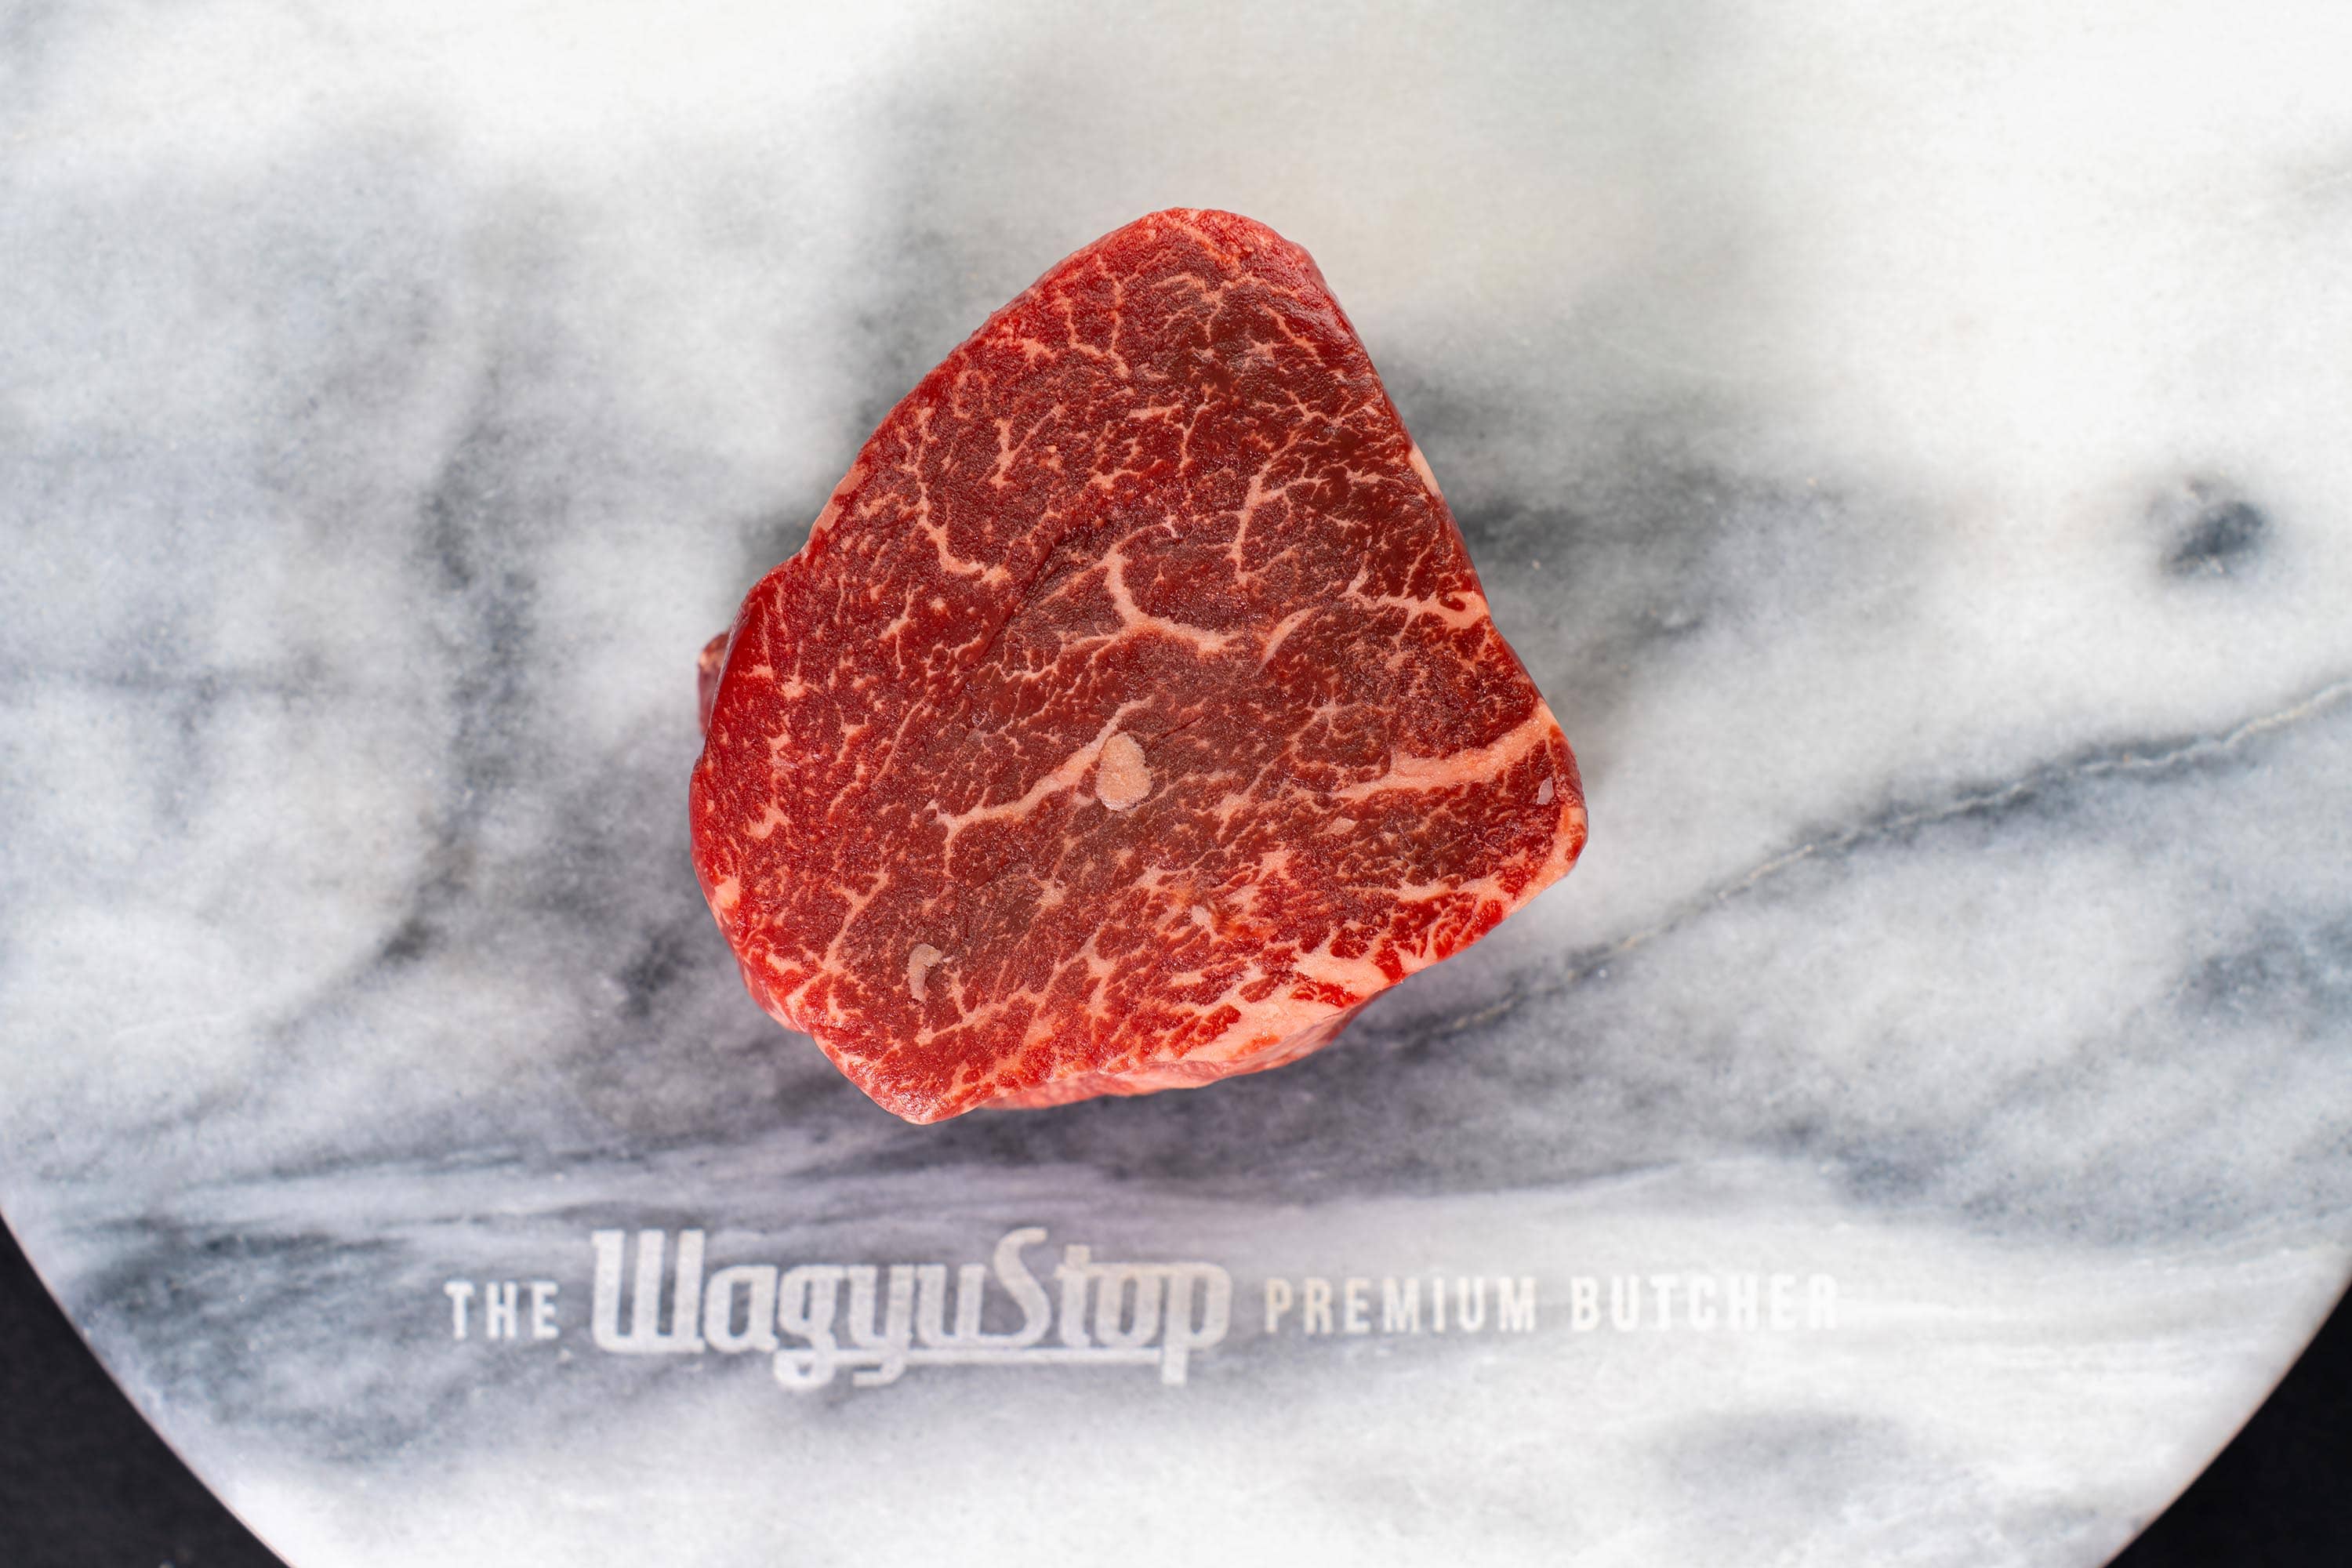 Pure-Bred Australian Wagyu Filet Score 6/7 WagyuStop